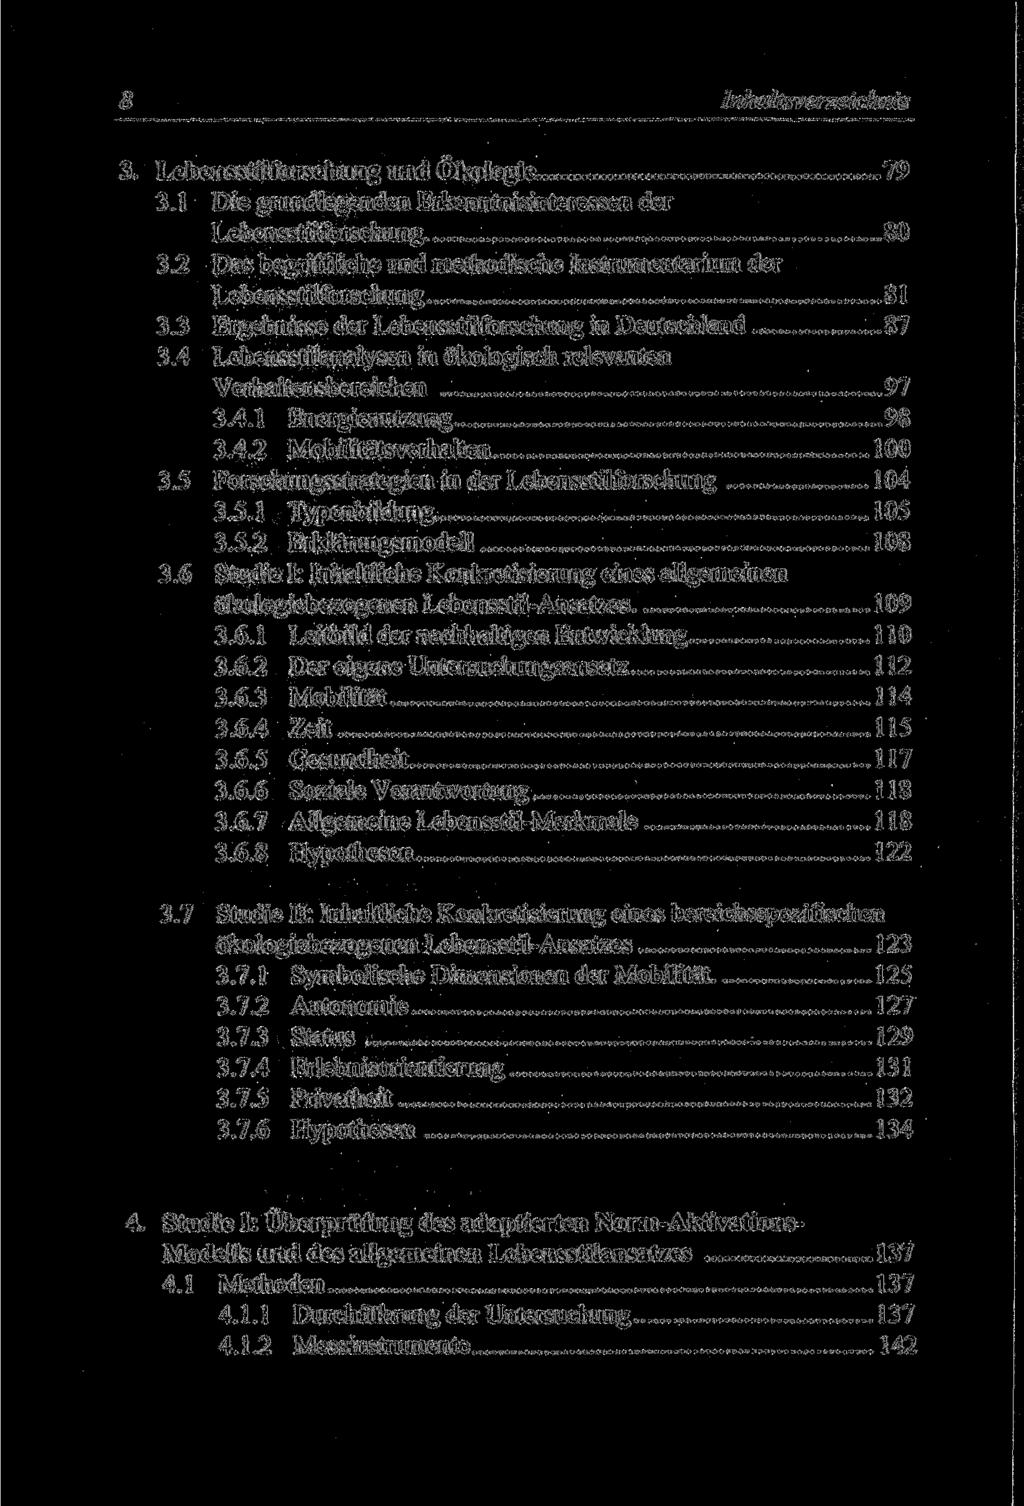 8 Inhaltsverzeichnis 3. Lebensstilforschung und Ökologie 79 3.1 Die grundlegenden Erkenntnisinteressen der Lebensstilforschung 80 3.